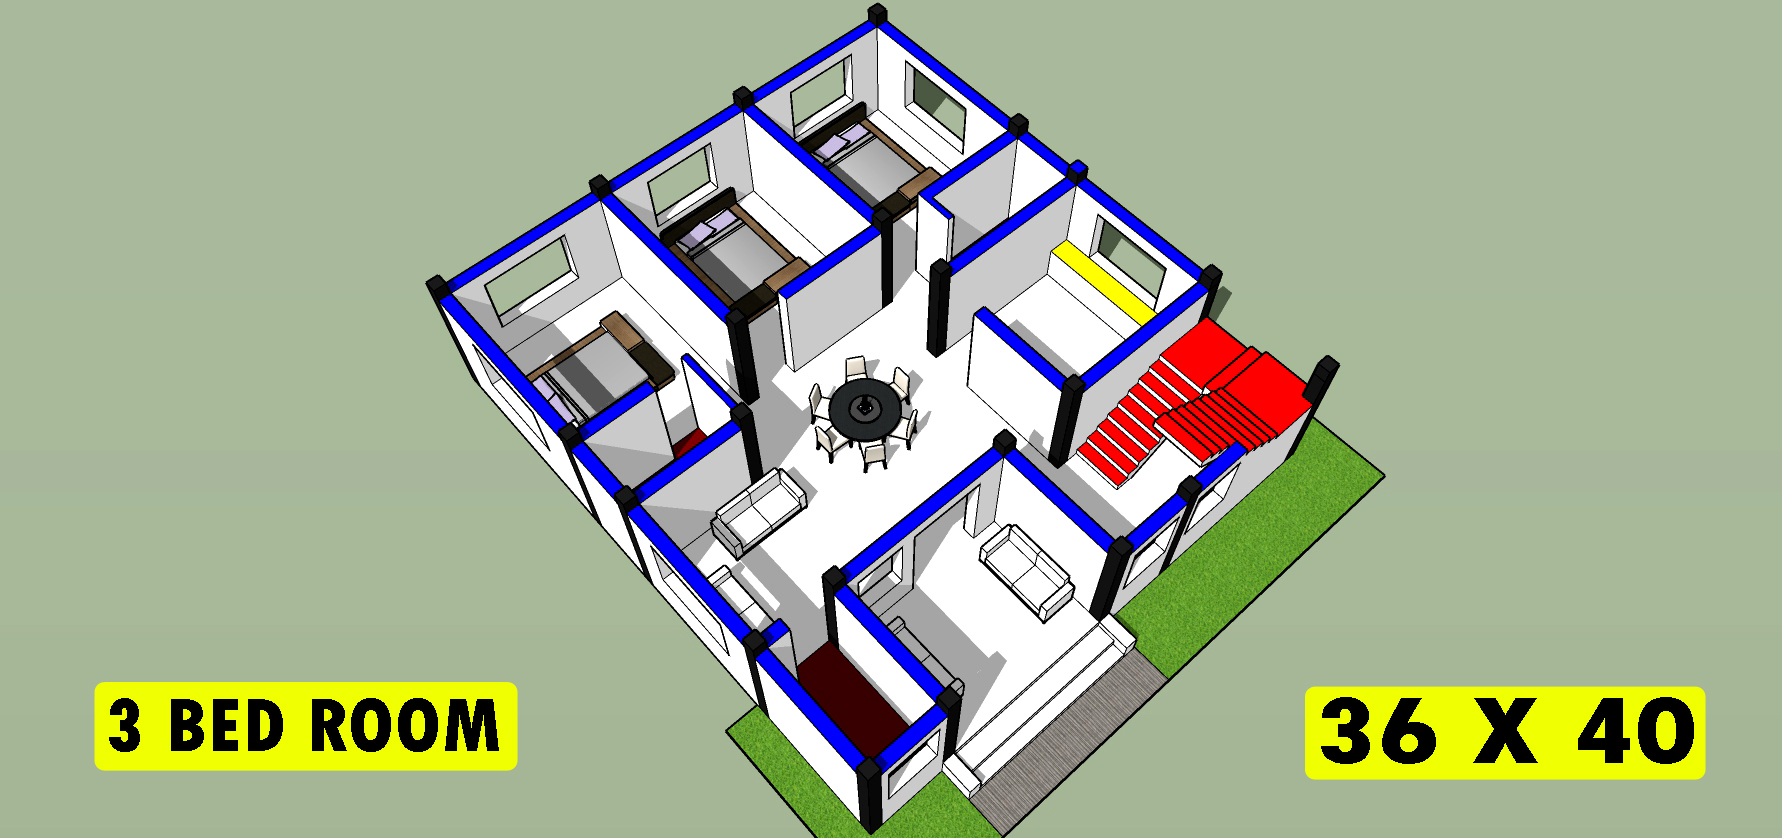 36 x 40 house plan